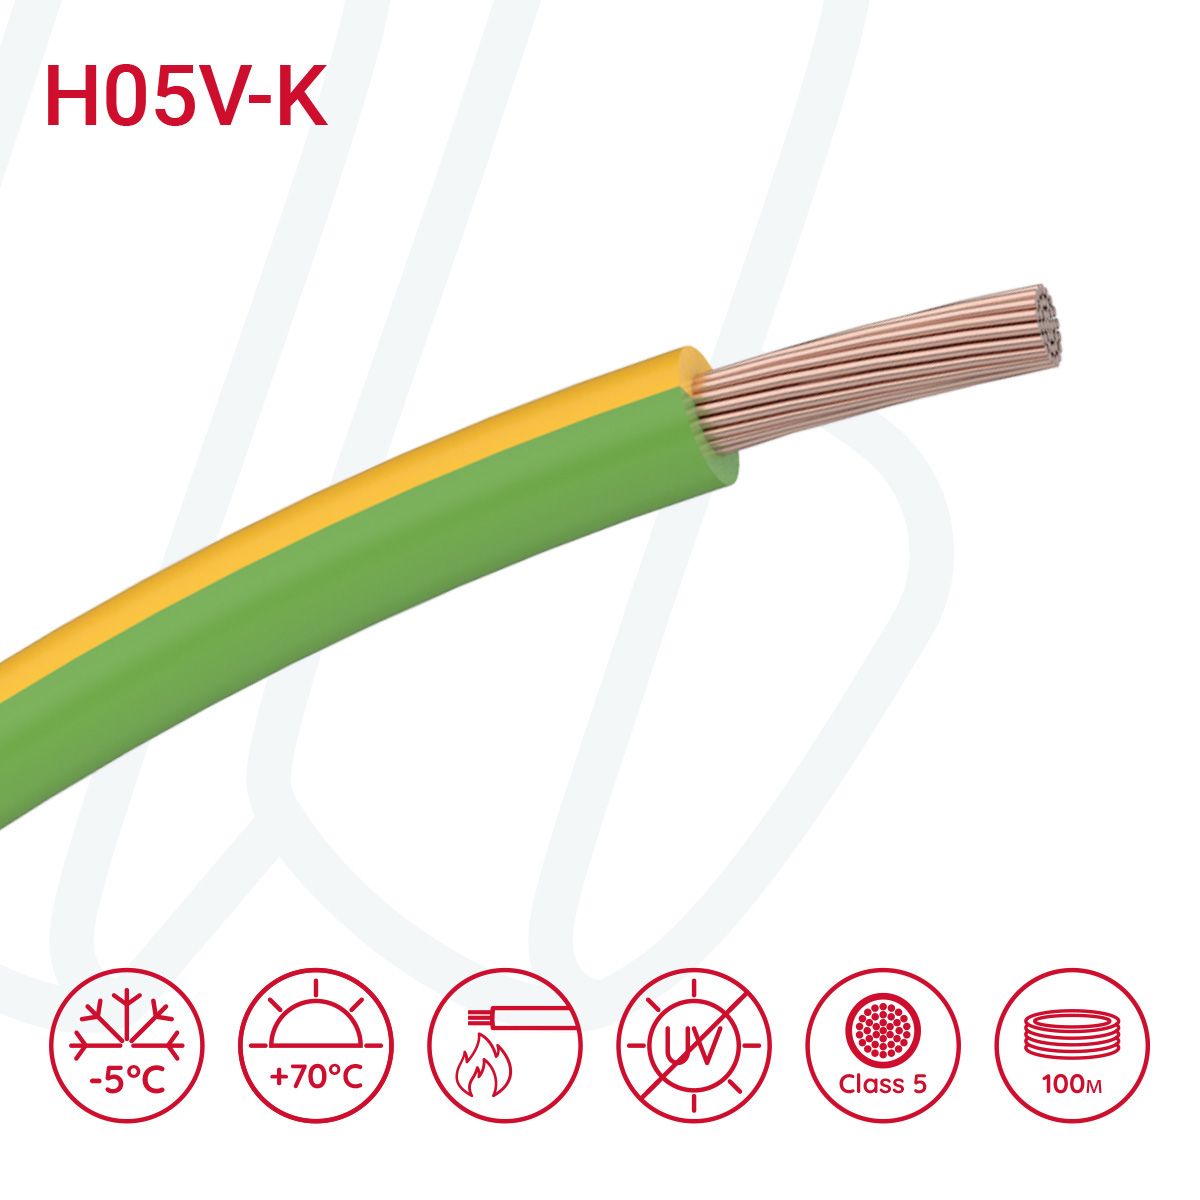 Провід монтажний гнучкий H05V-K 1 мм² жовто-зелений, 01, 1.0